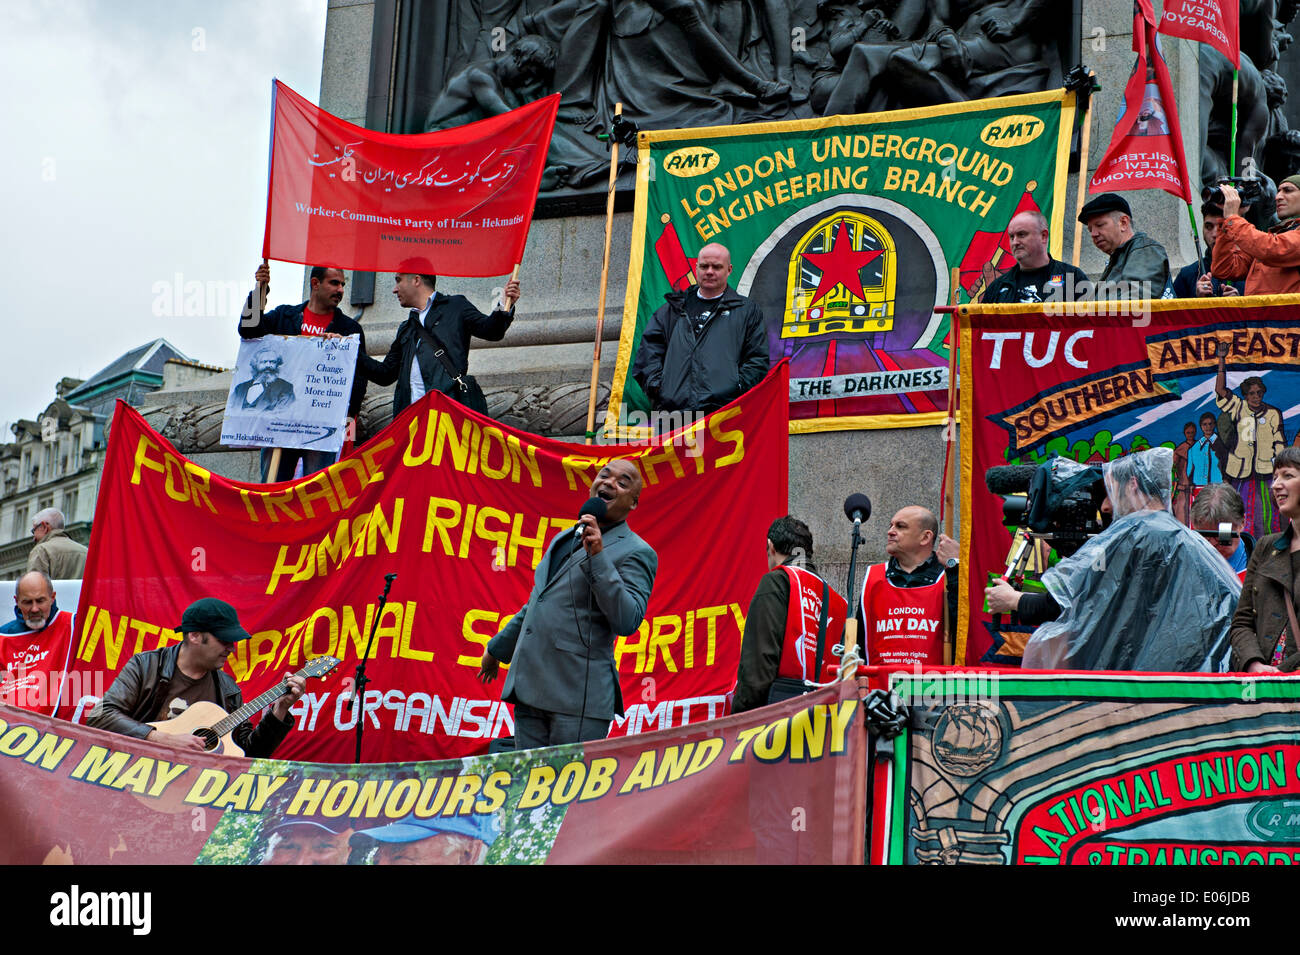 Un chanteur parmi les bannières syndicales vu à un rassemblement Mayday à Londres Banque D'Images